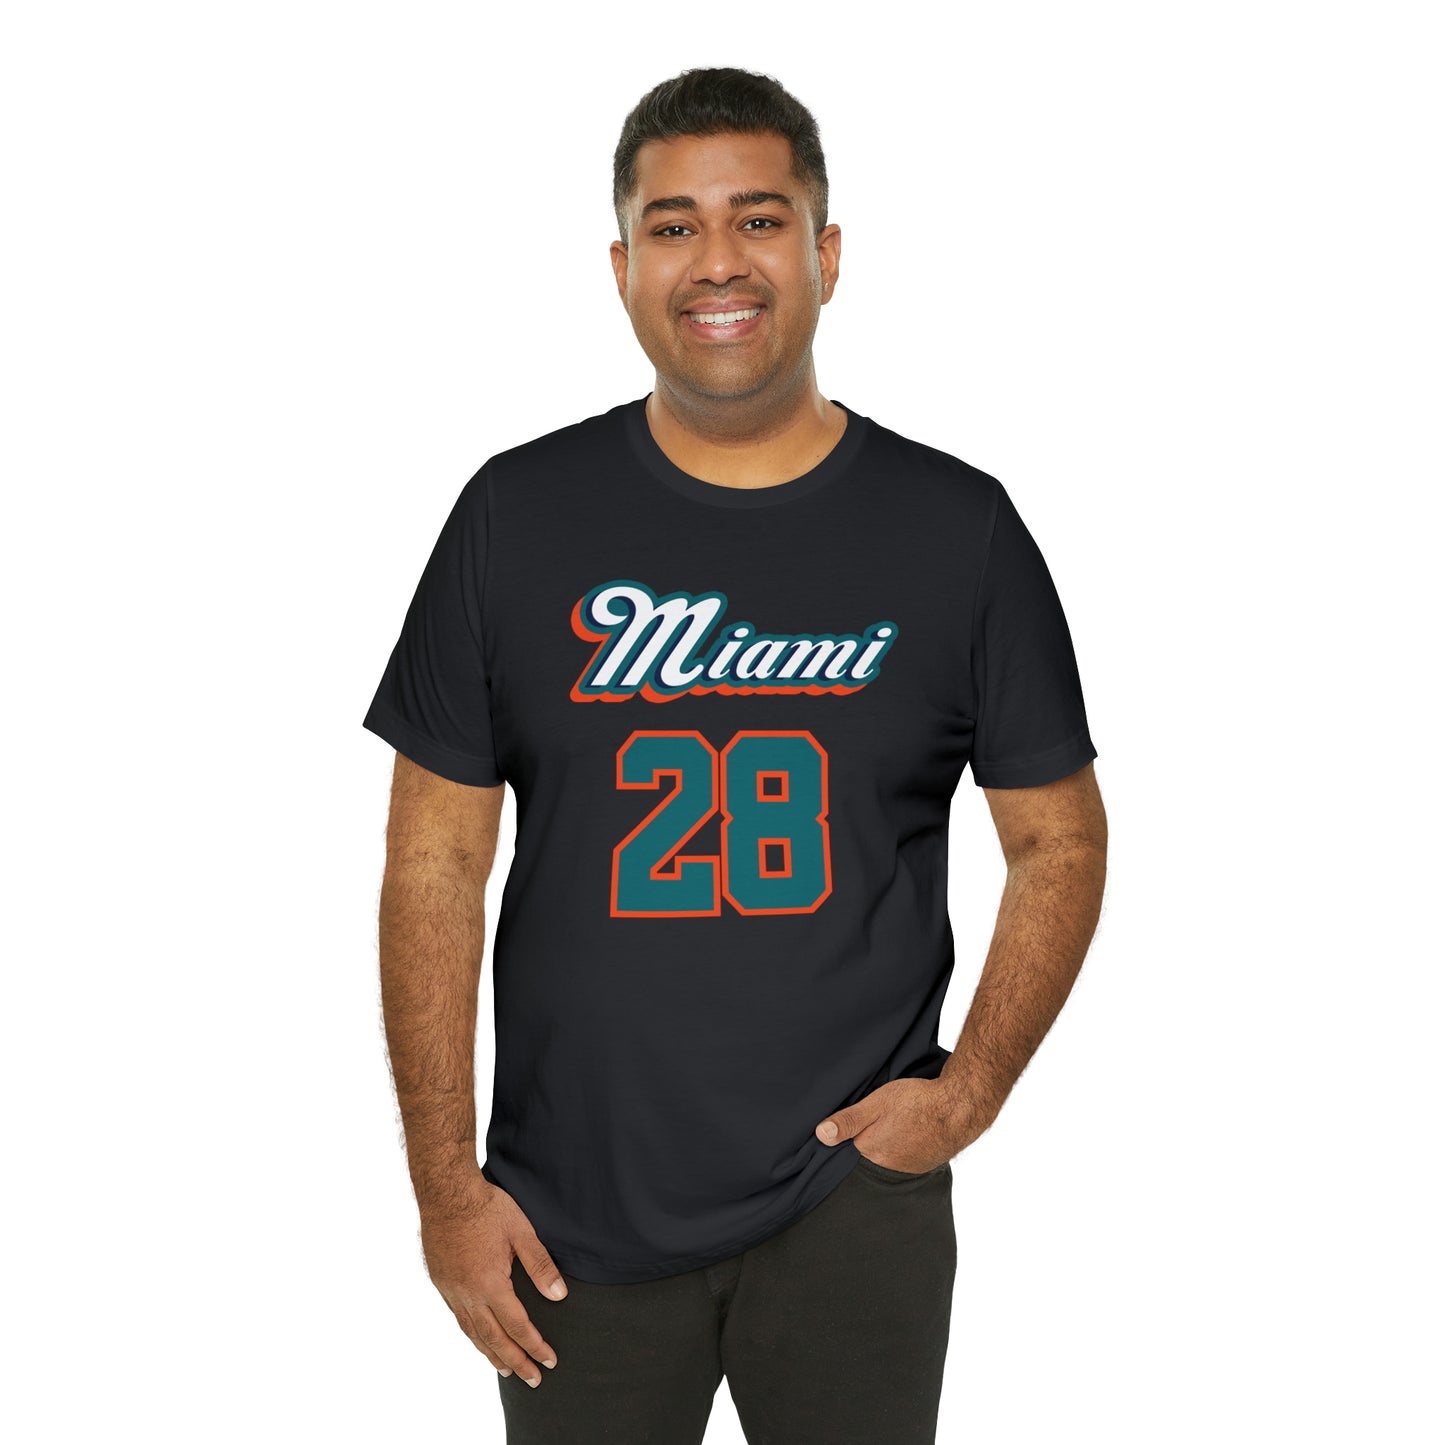 28 Miami Player Tee